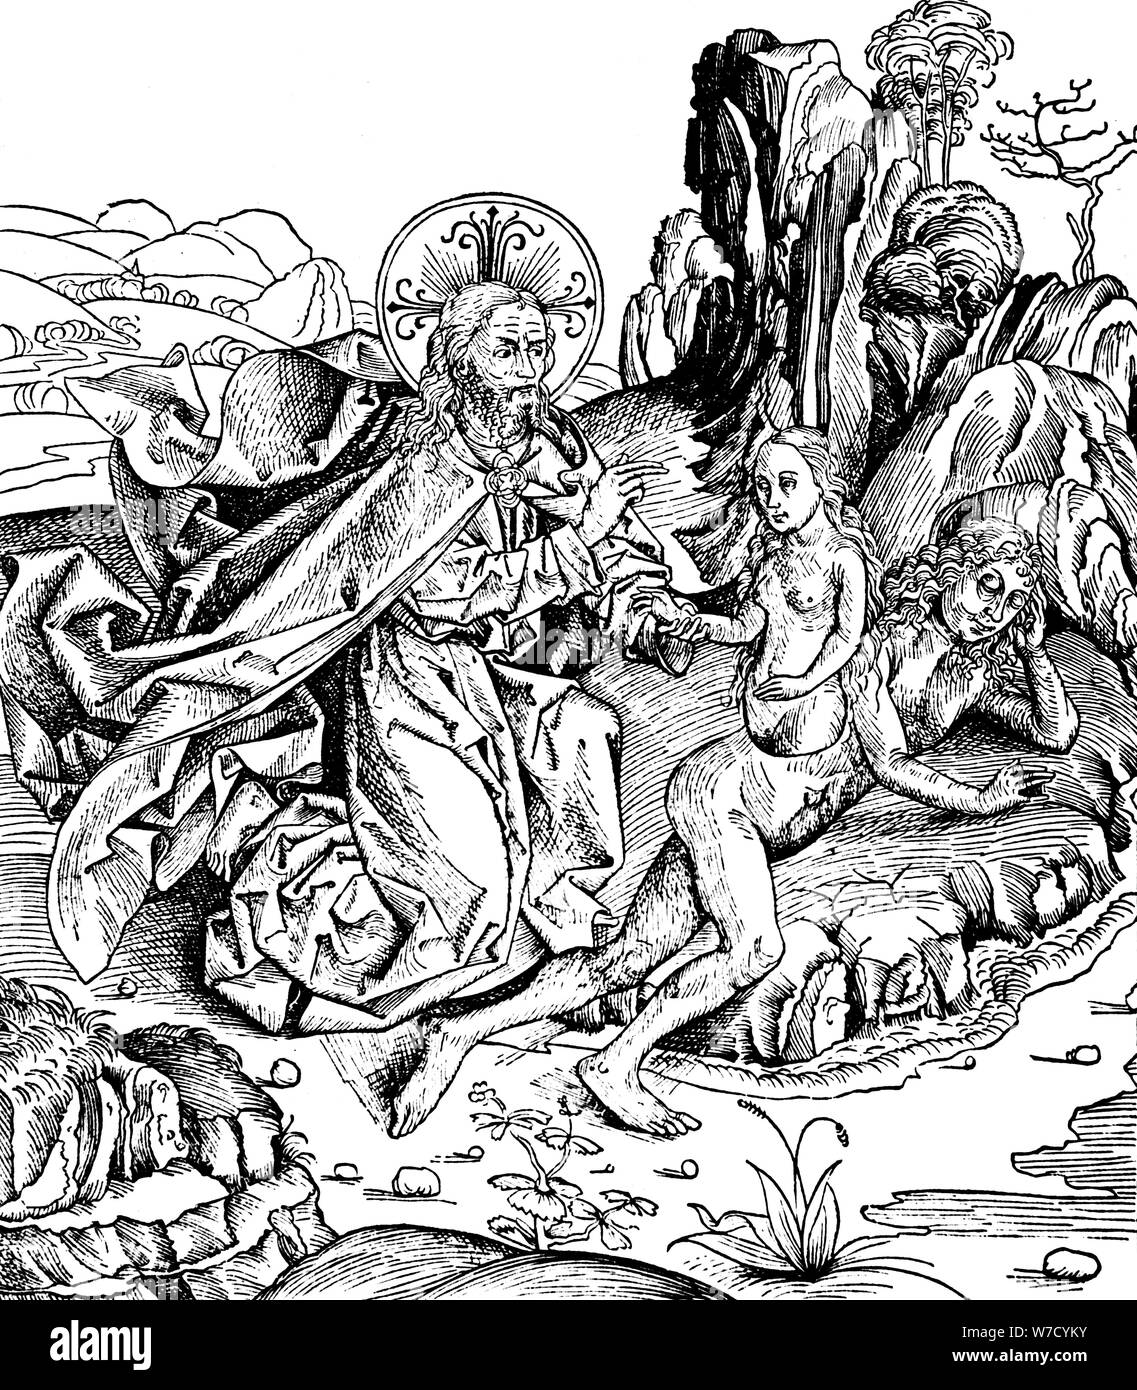 Dieu la création d'Eve de la côte d'Adam, 1493. Artiste : Inconnu Banque D'Images